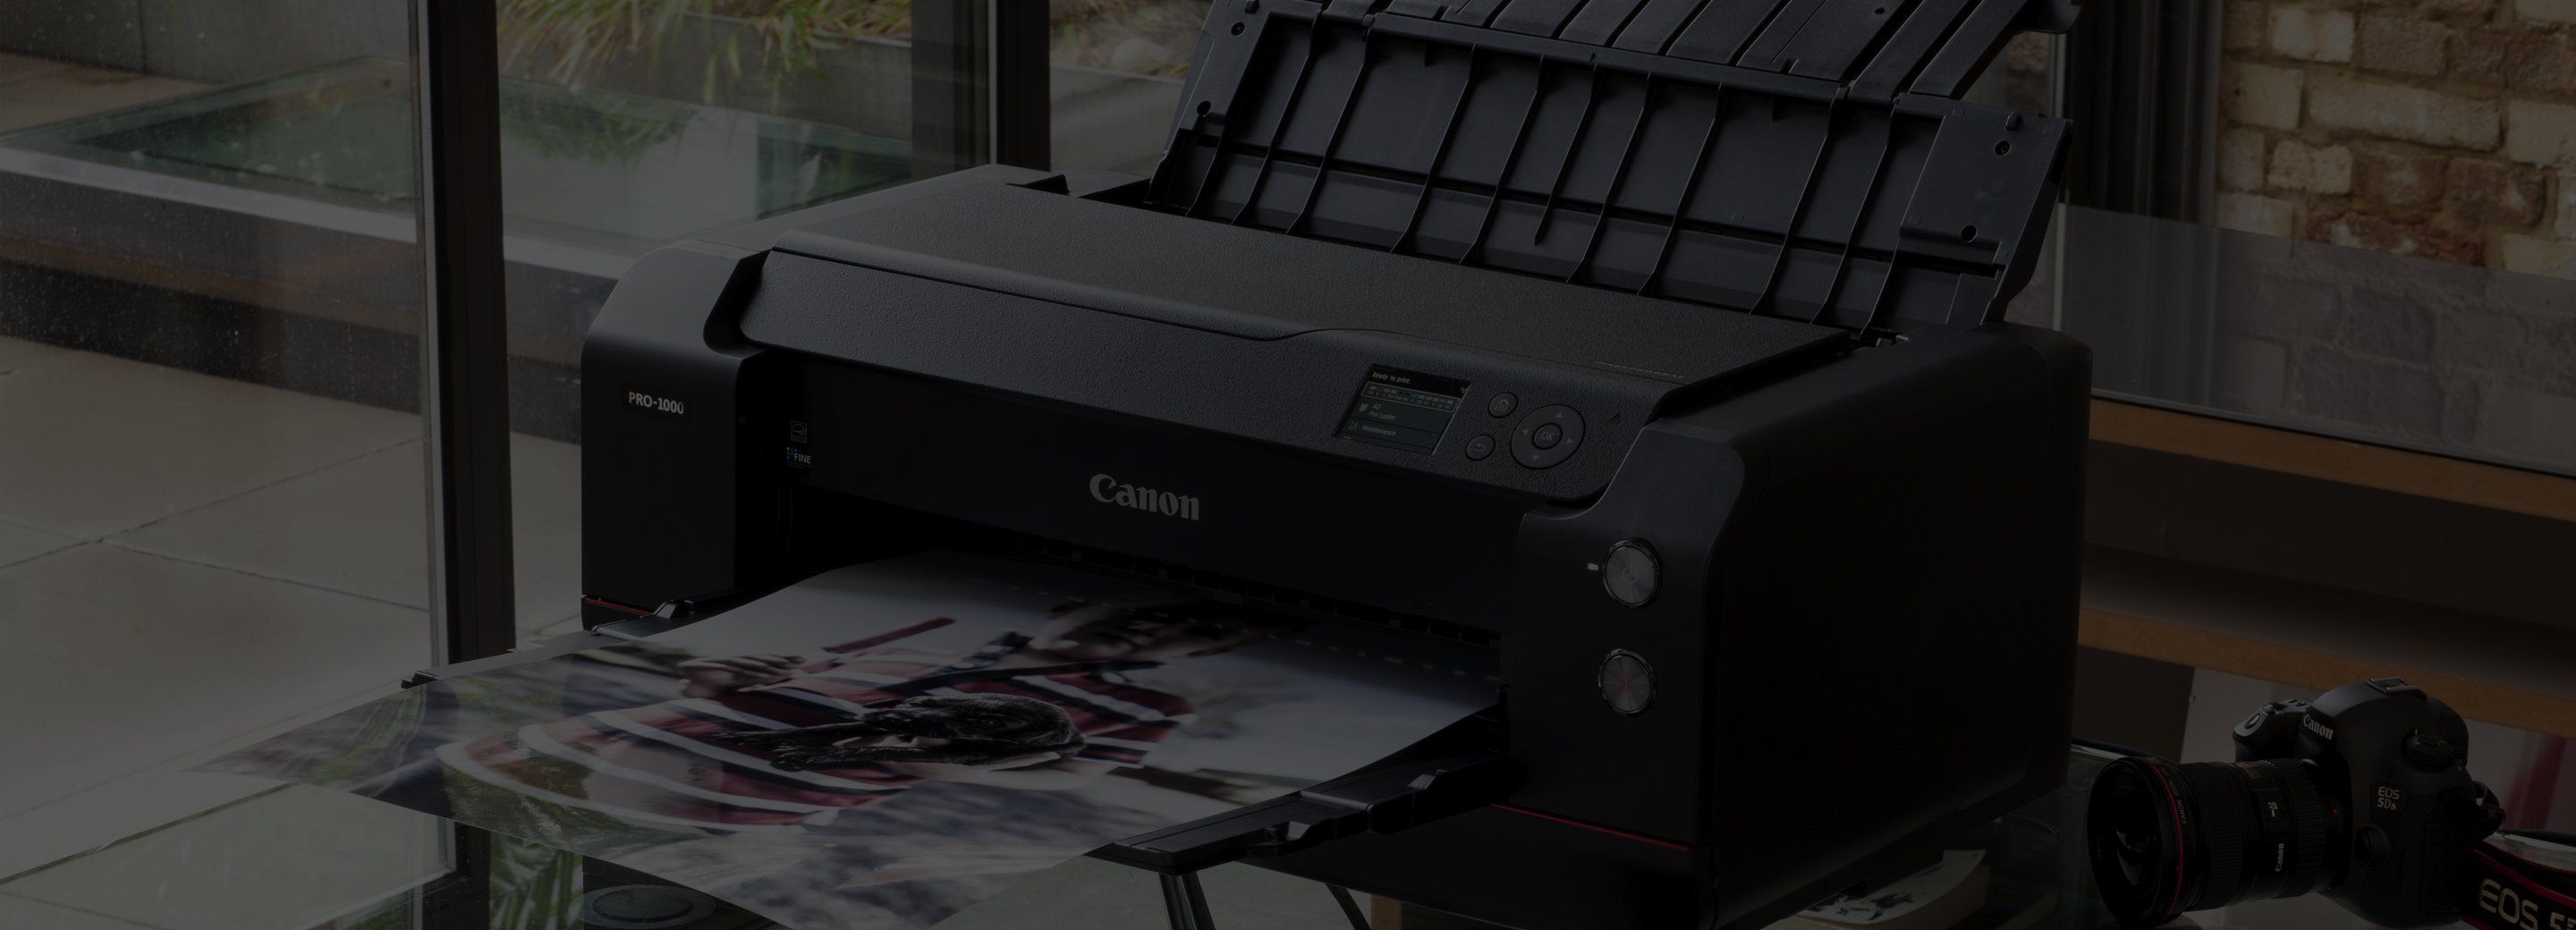 Professional Photo Printers - Inkjet Printer - Canon Hong Kong